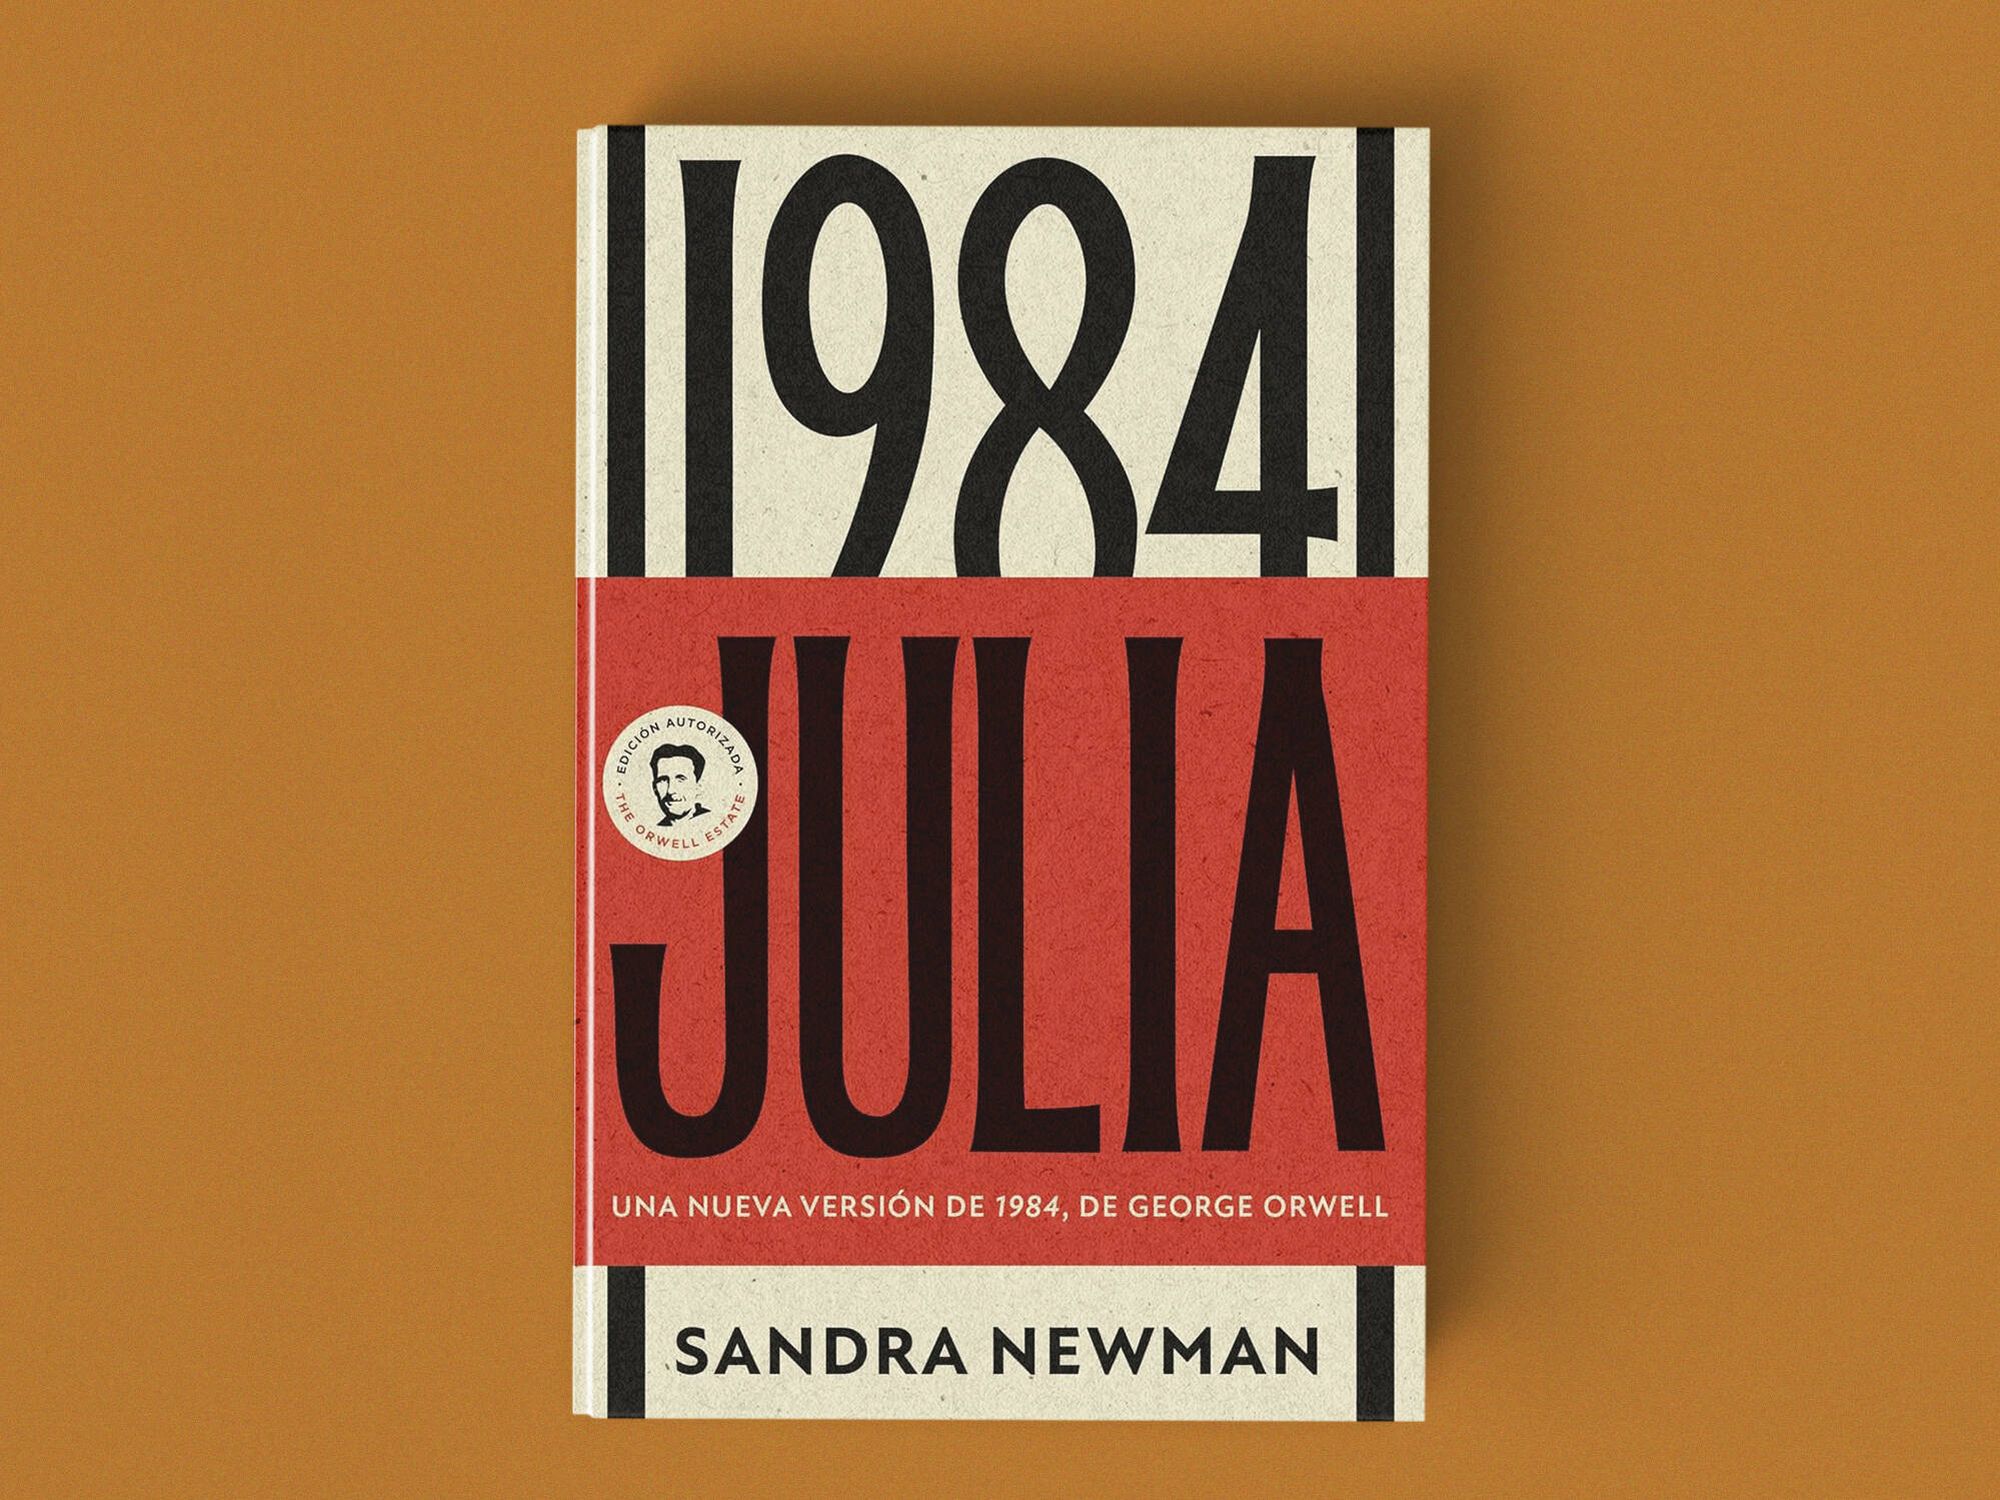 Portada de 'Julia', la versión de '1984' escrita por Sandra Newman.